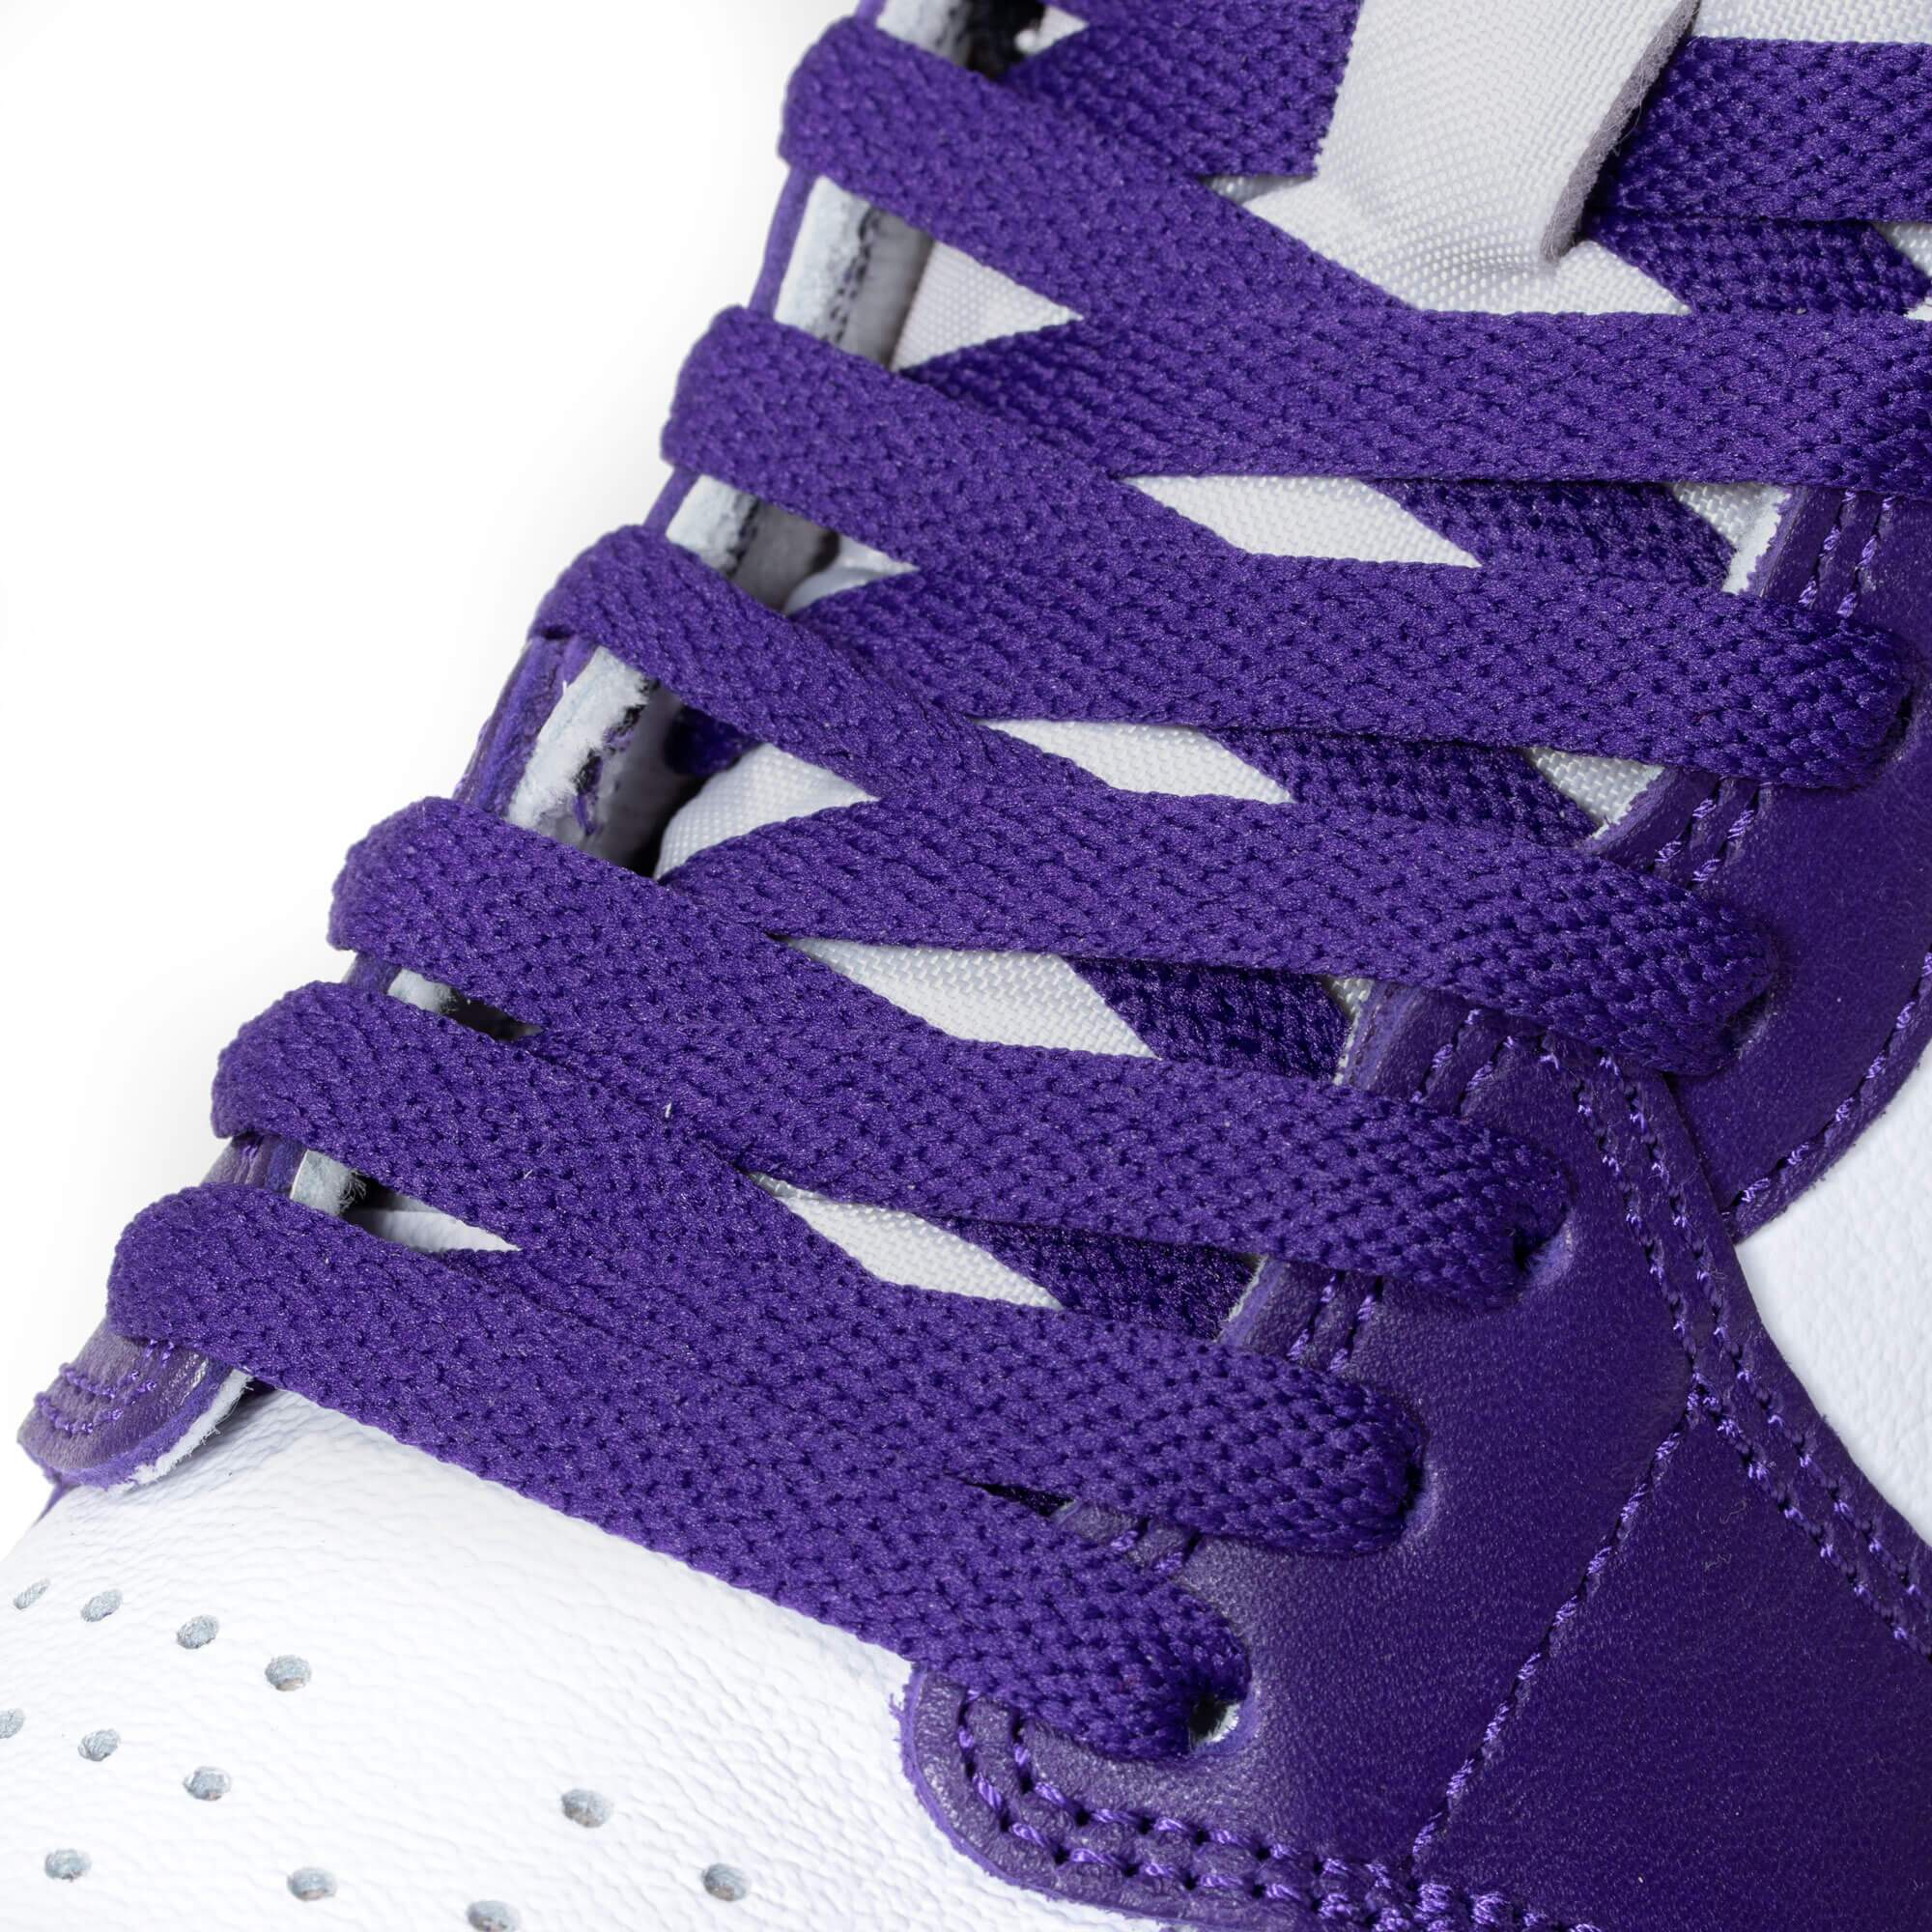 court purple 2.0 purple laces